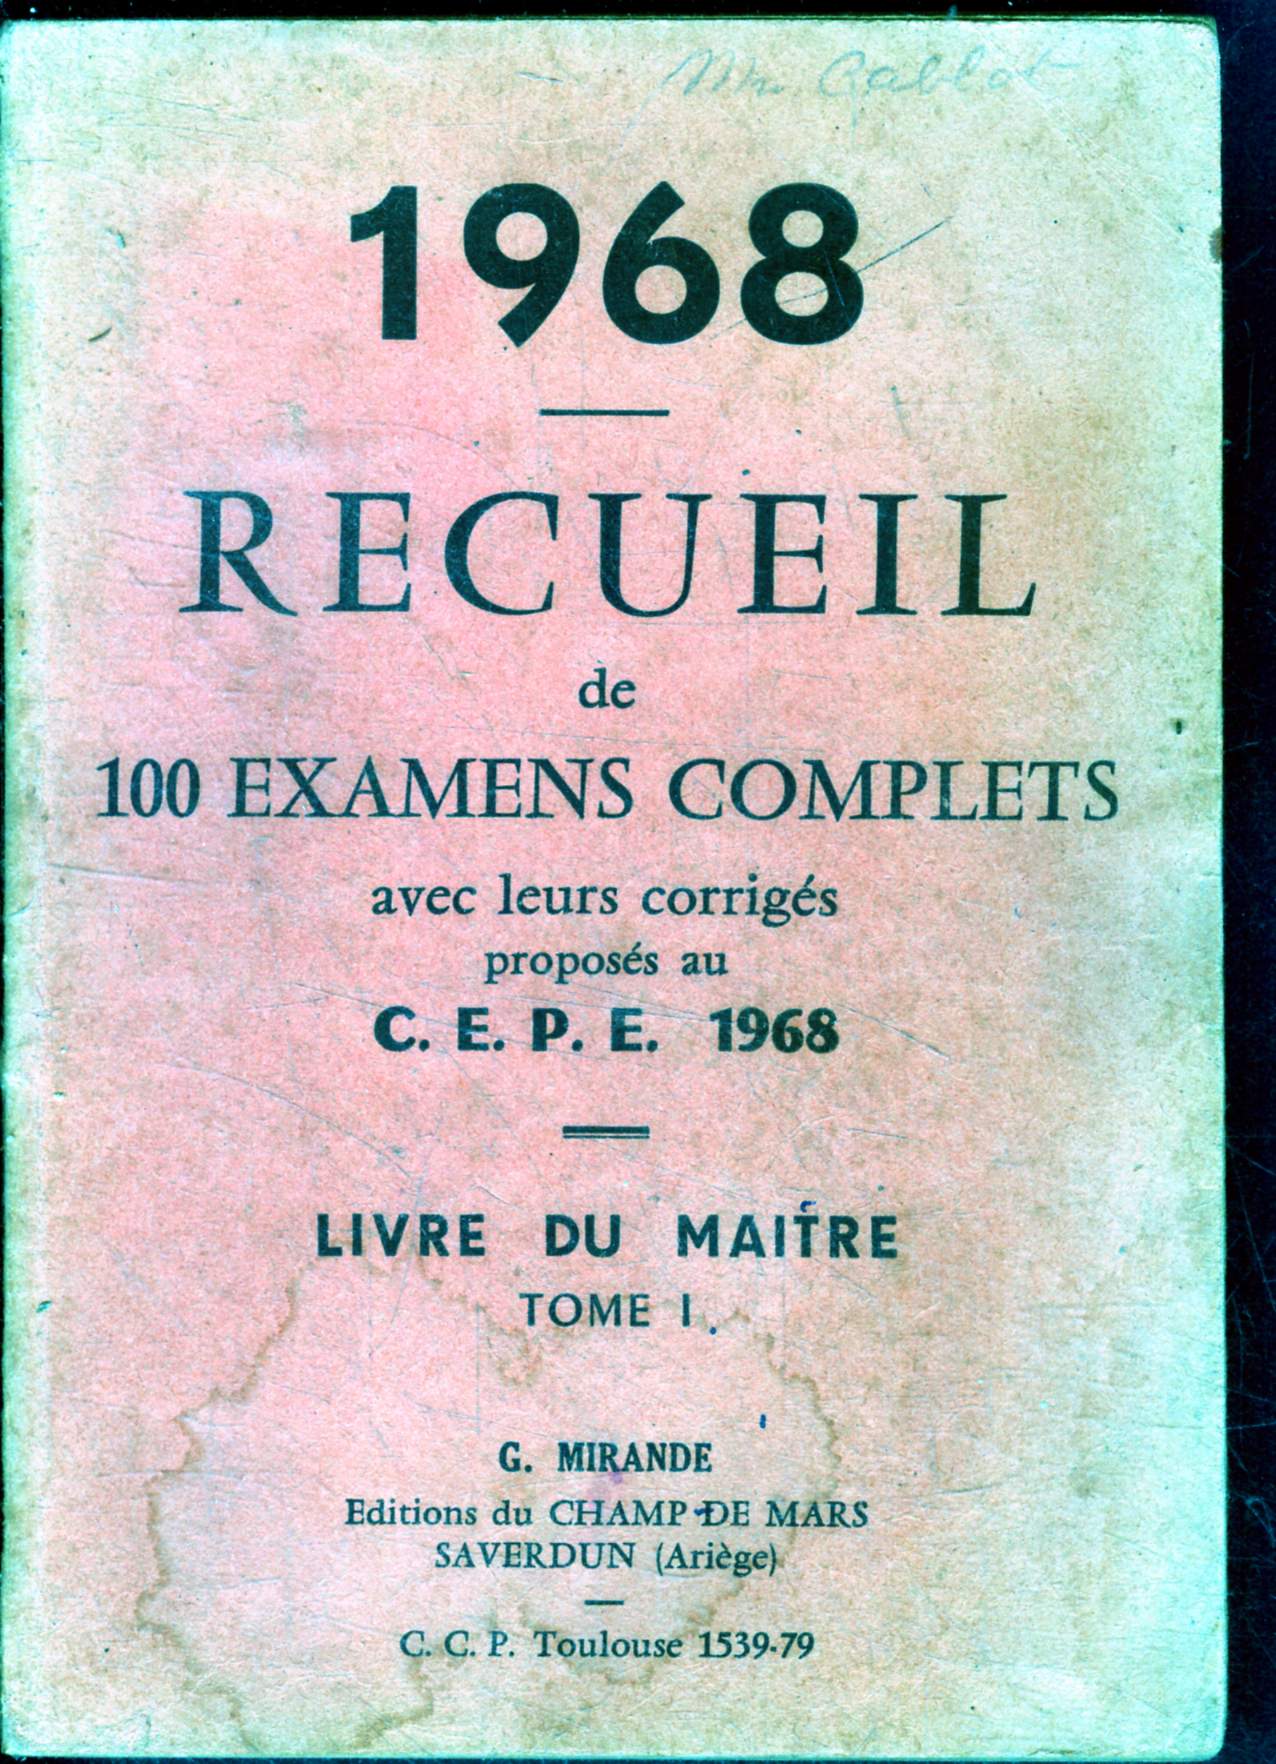 1968 recueil de 100 examens complets avec leur corriges proposes au C.E.P.E. 1968 - livre du maitre - tome I